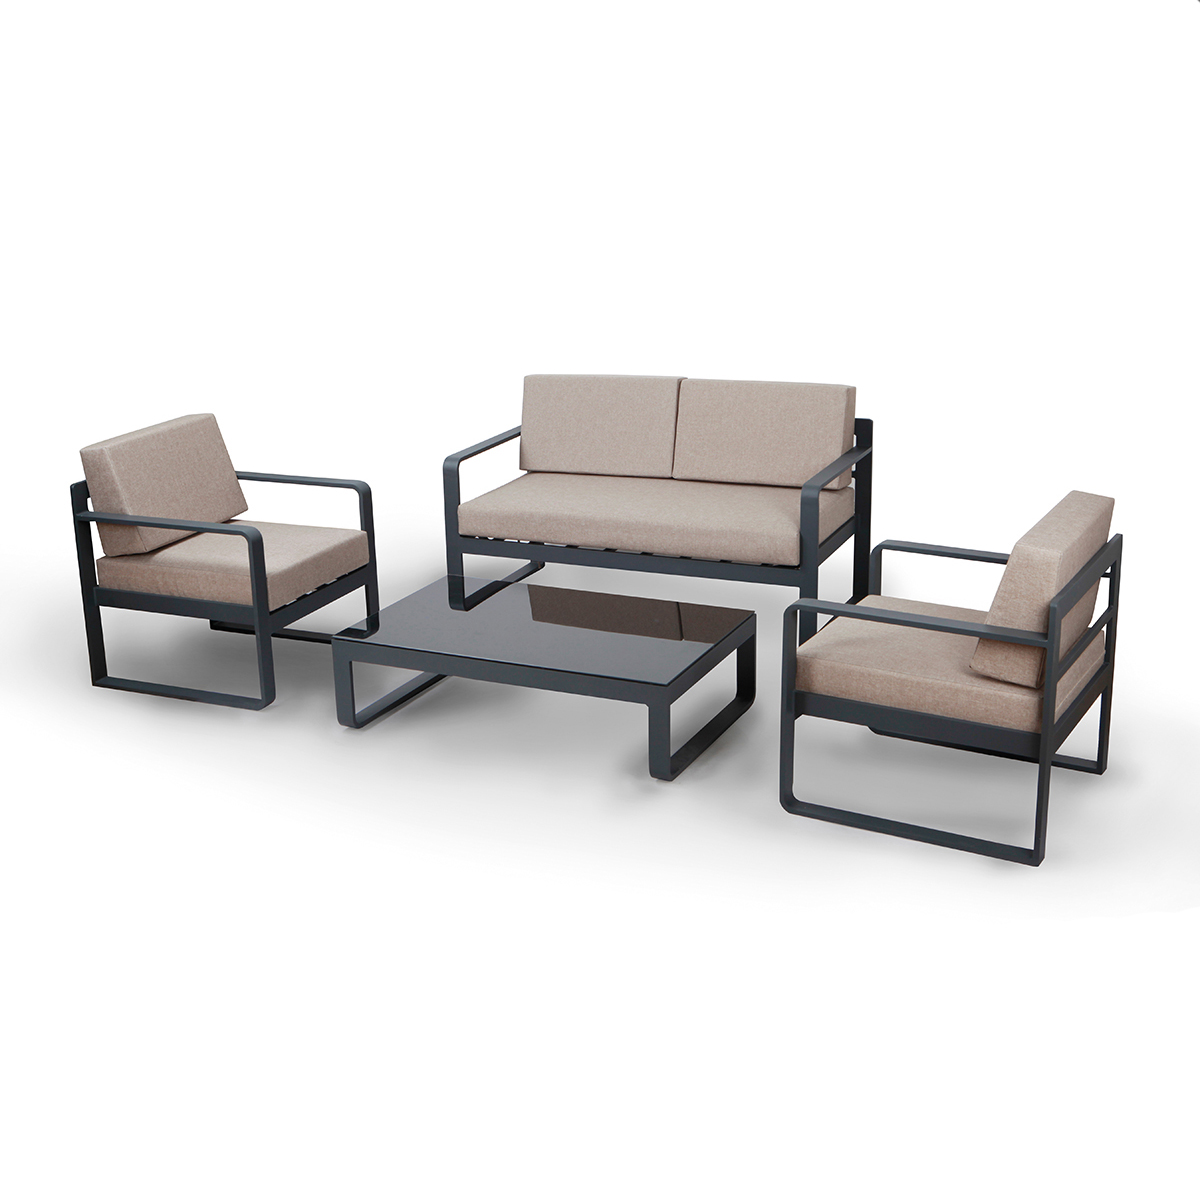 Outdoor Loungeset ANACAPRI, inkl. 2er Sofa, zwei Sessel und Tisch